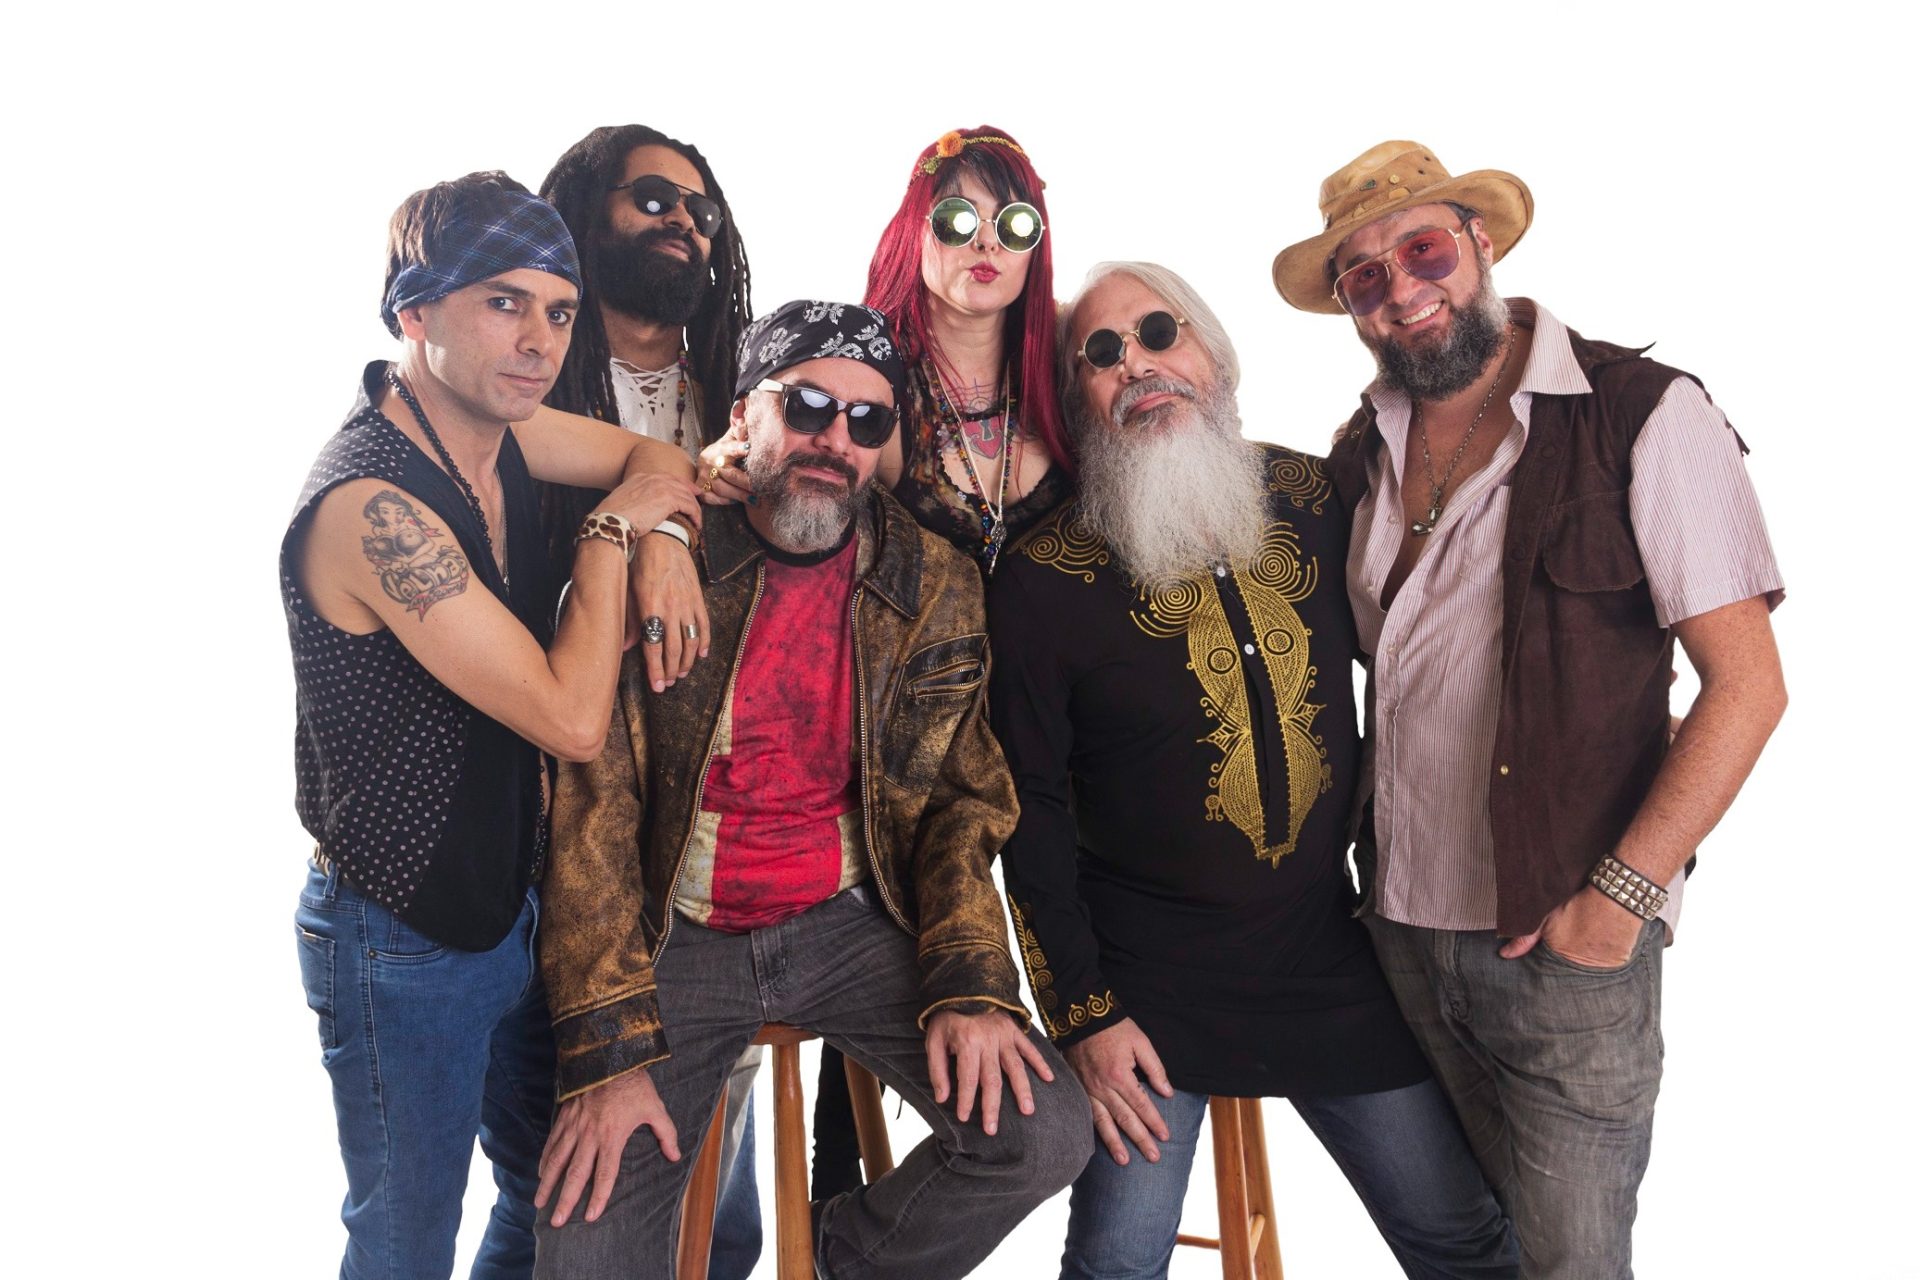 Velhas Virgens, maior banda independente do Brasil, coloca o rock como trilha sonora da festa nesta sexta-feira (12) em Porto Alegre